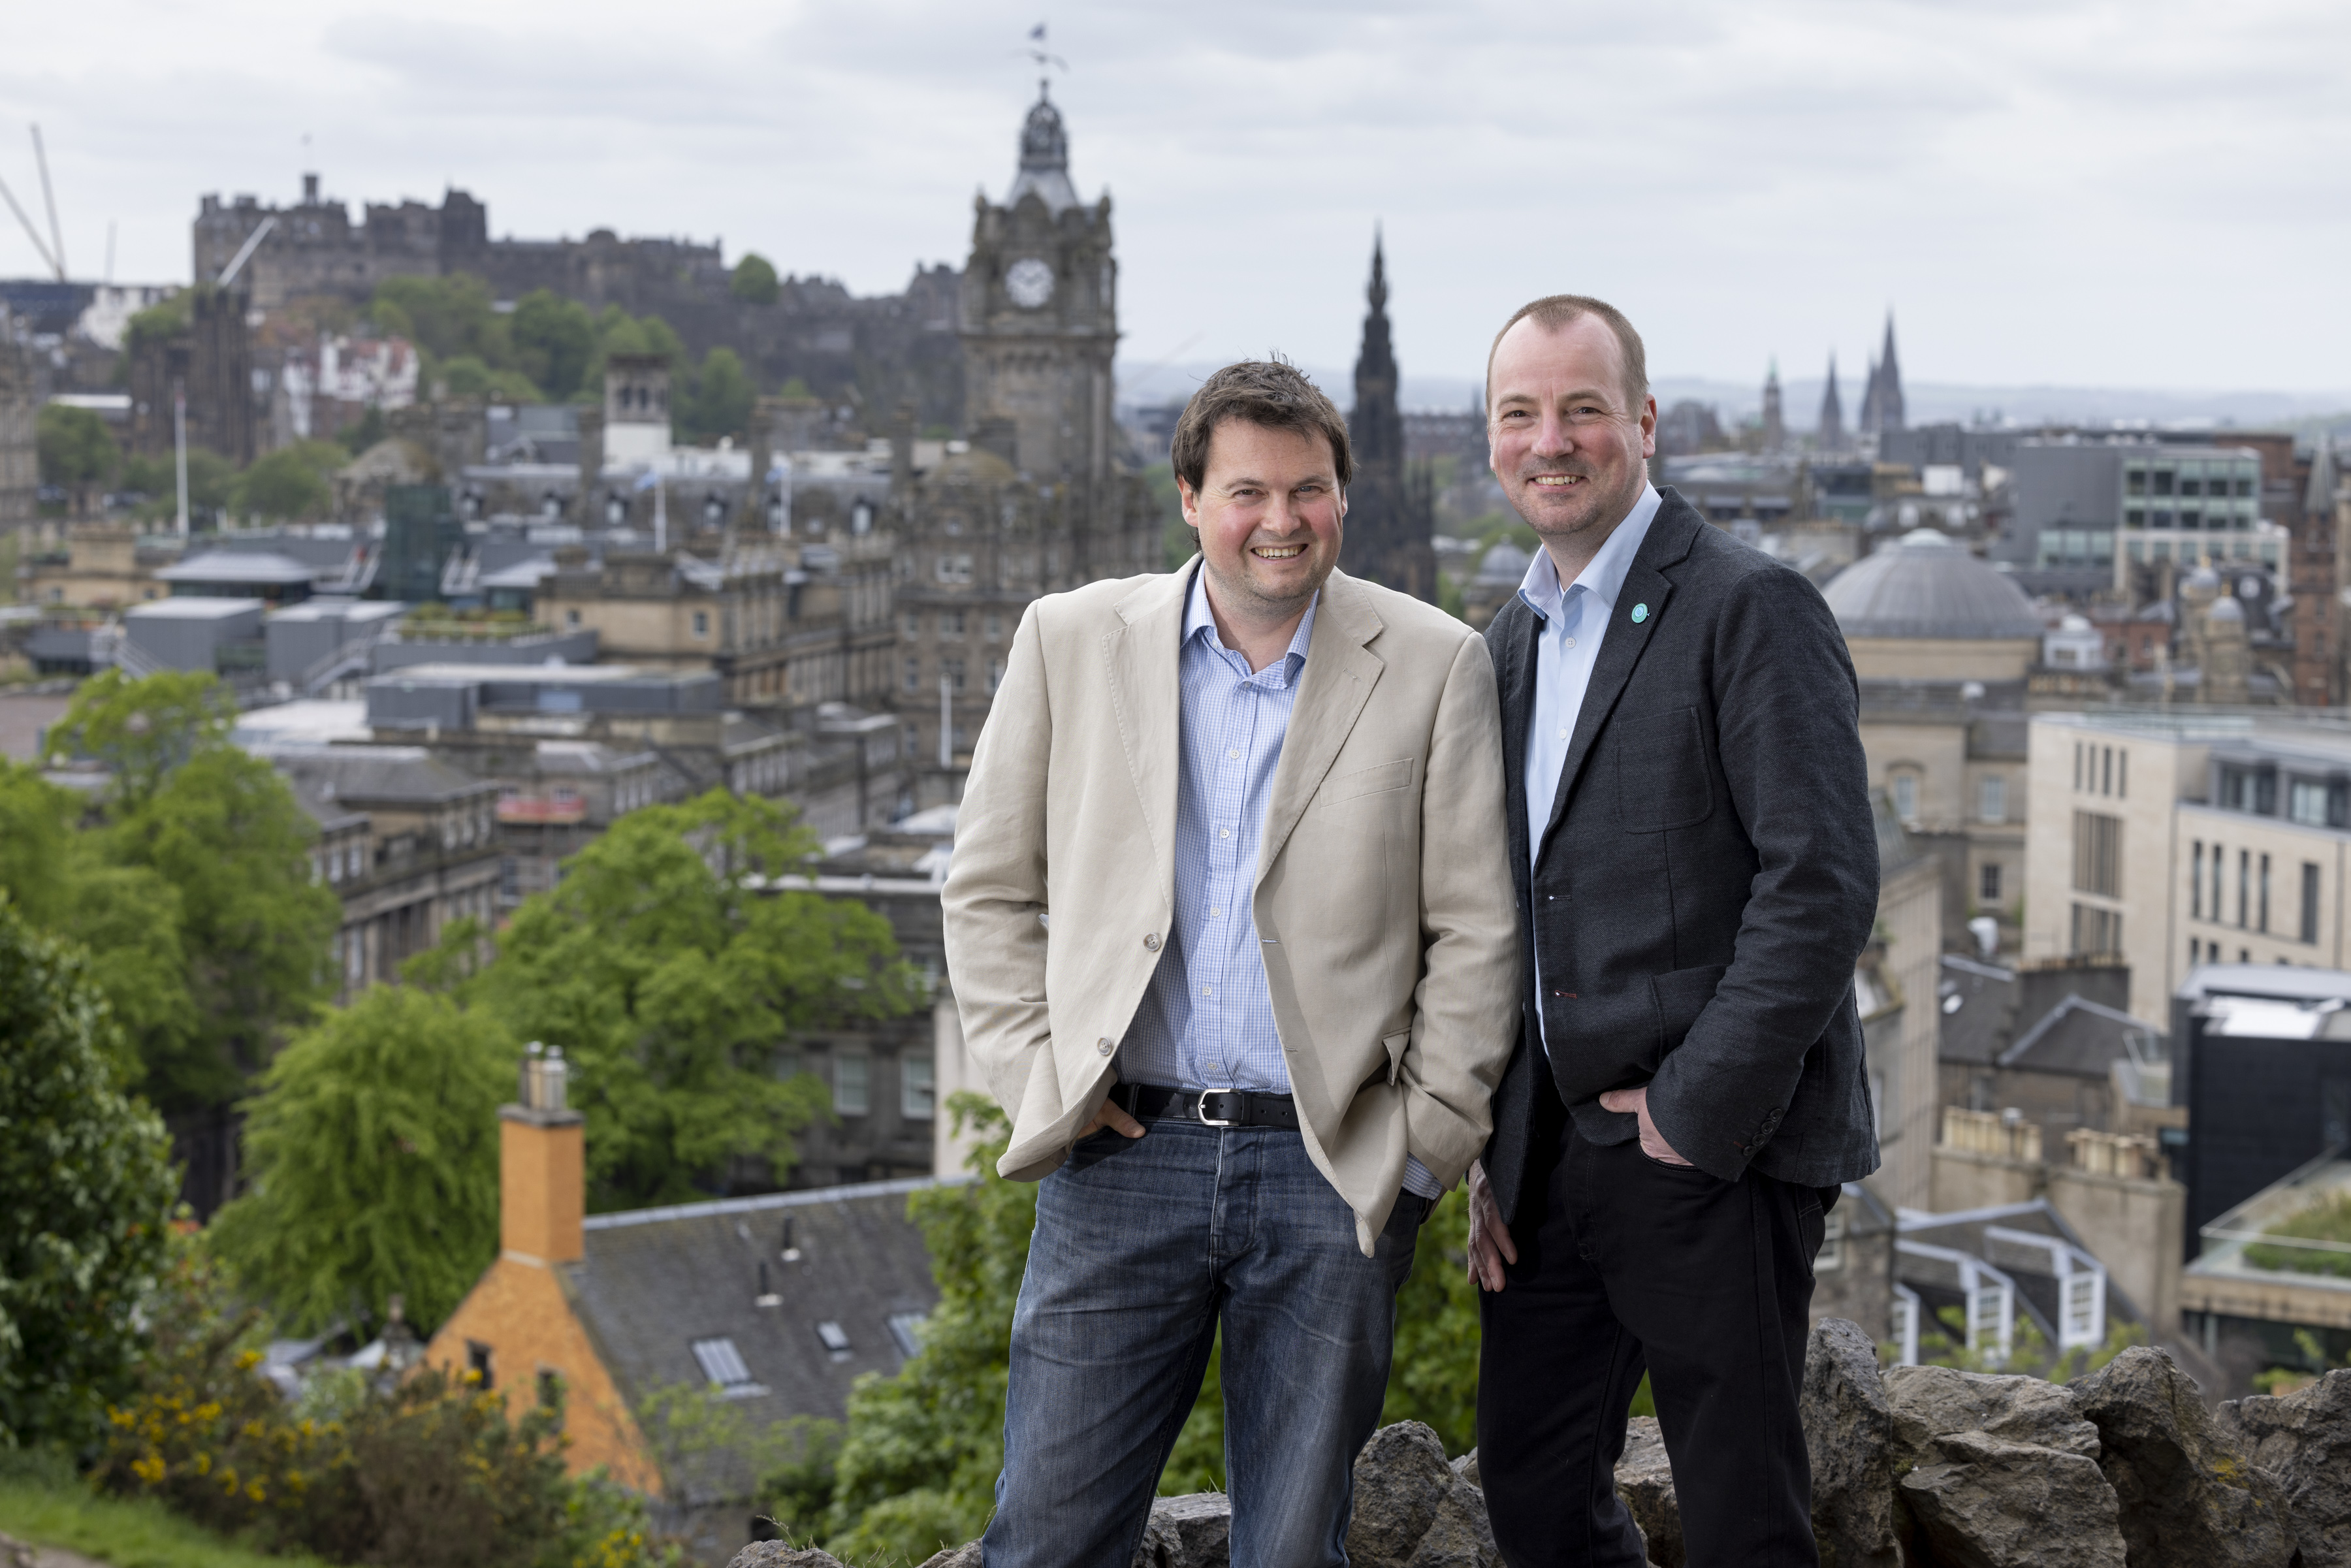 Edinburgh biotech secures £250,000 seed funding